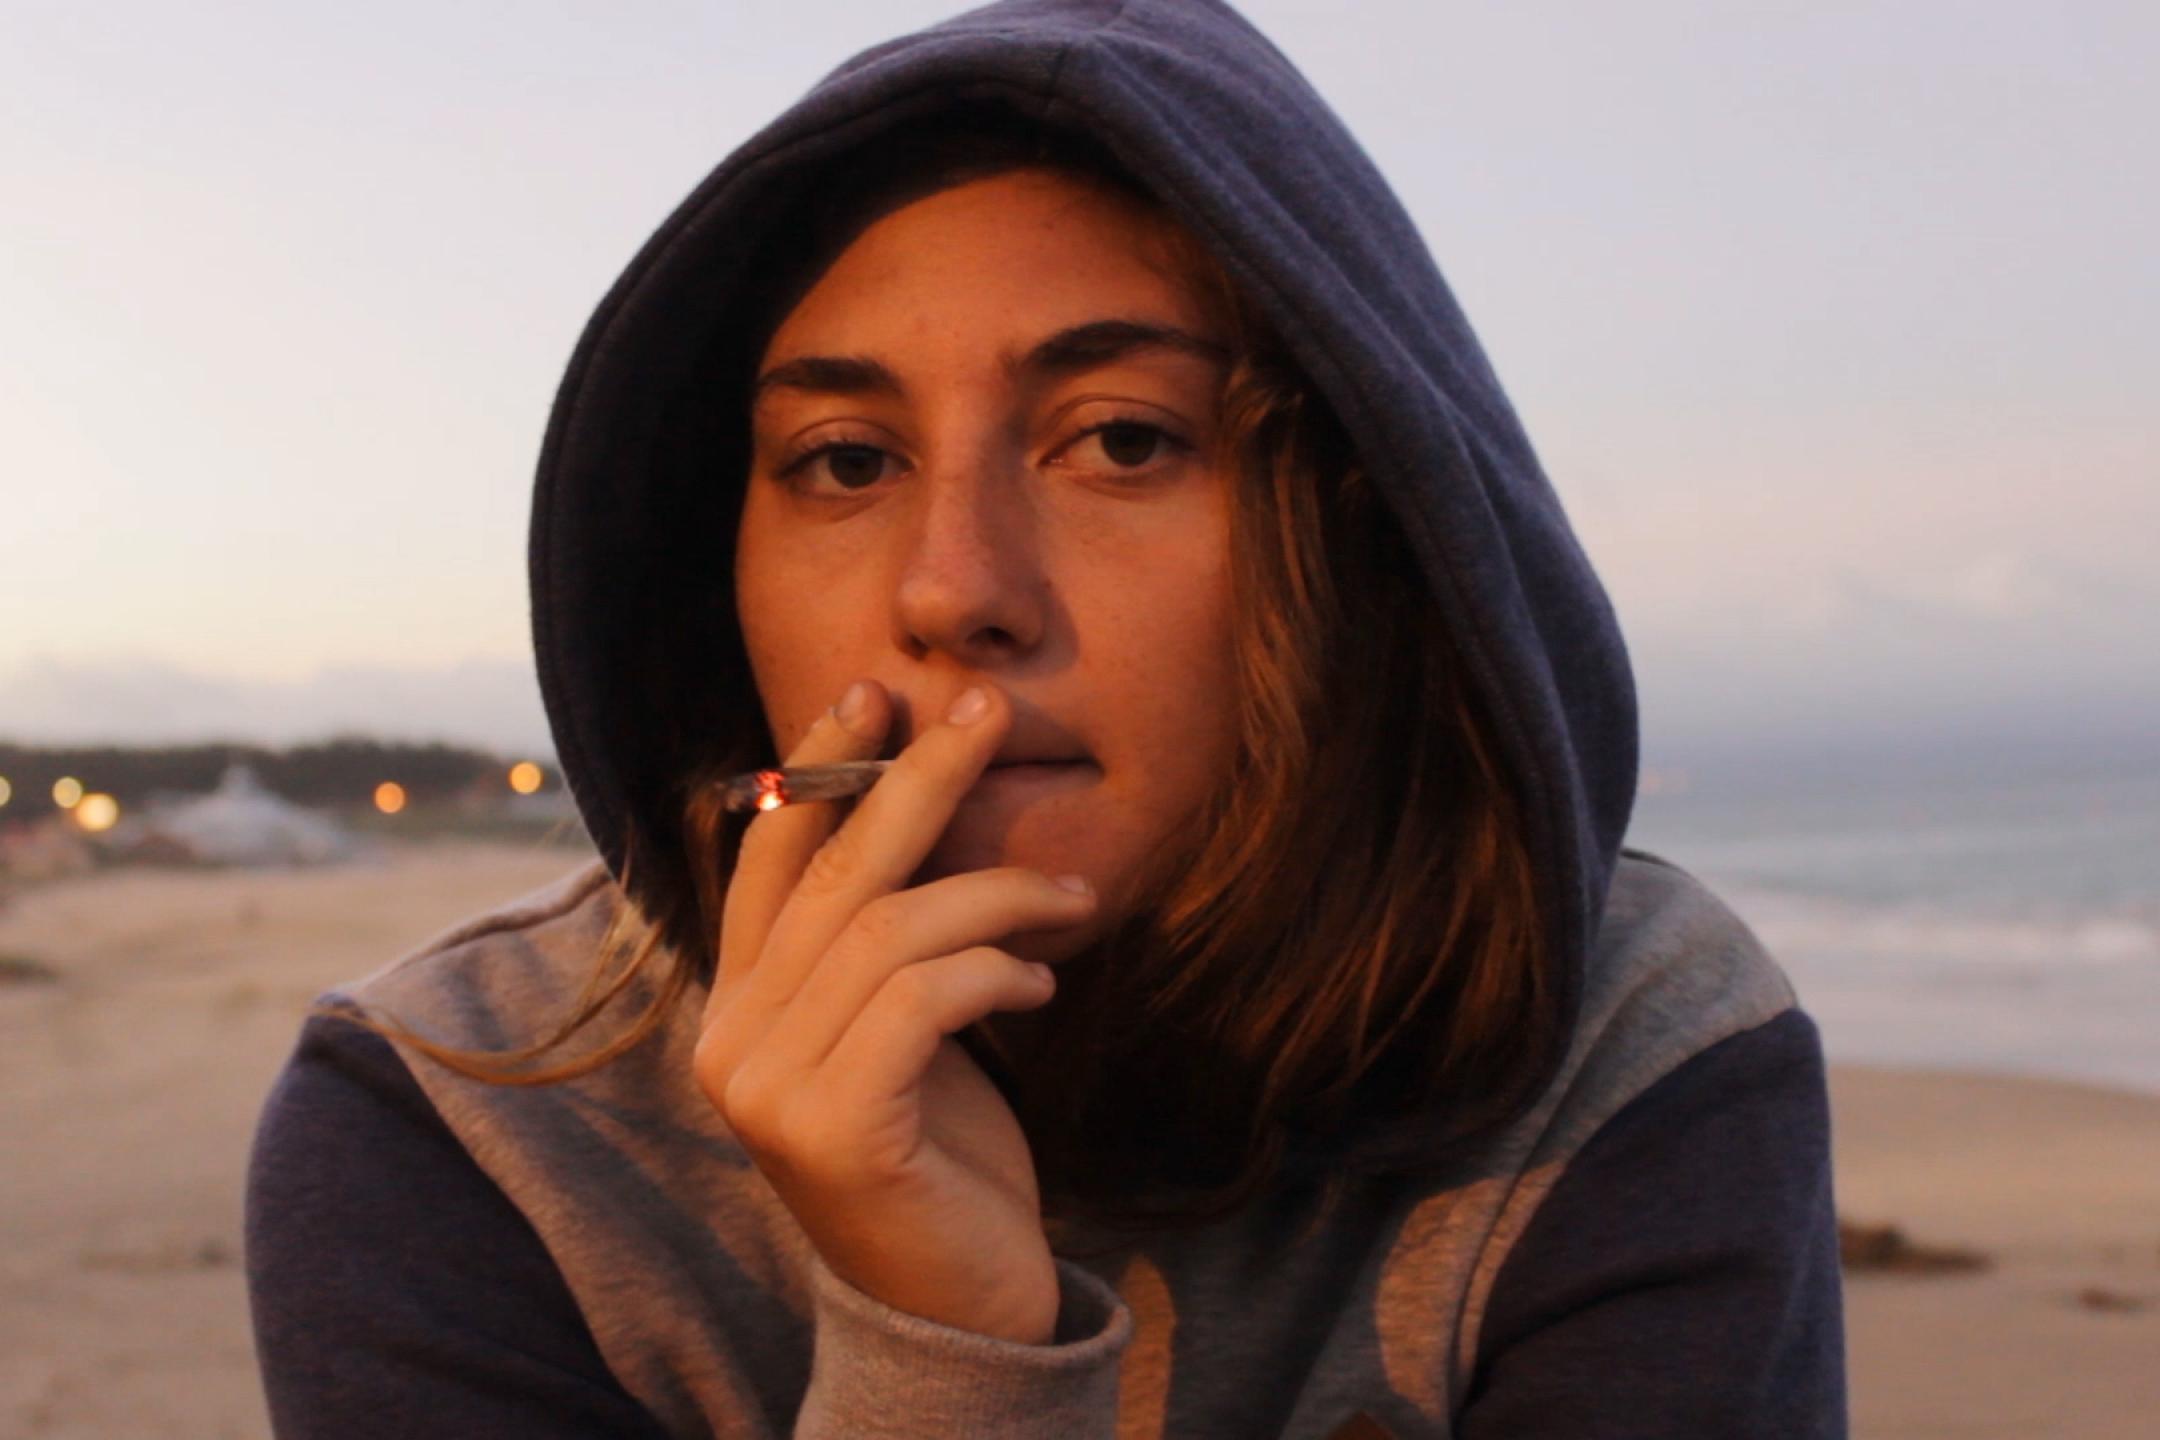 Porträt einer jungen Frau in einem Hoodie mit Kapuze. Sie raucht eine Zigarette und blickt lässig-nachdenklich in die Kamera.